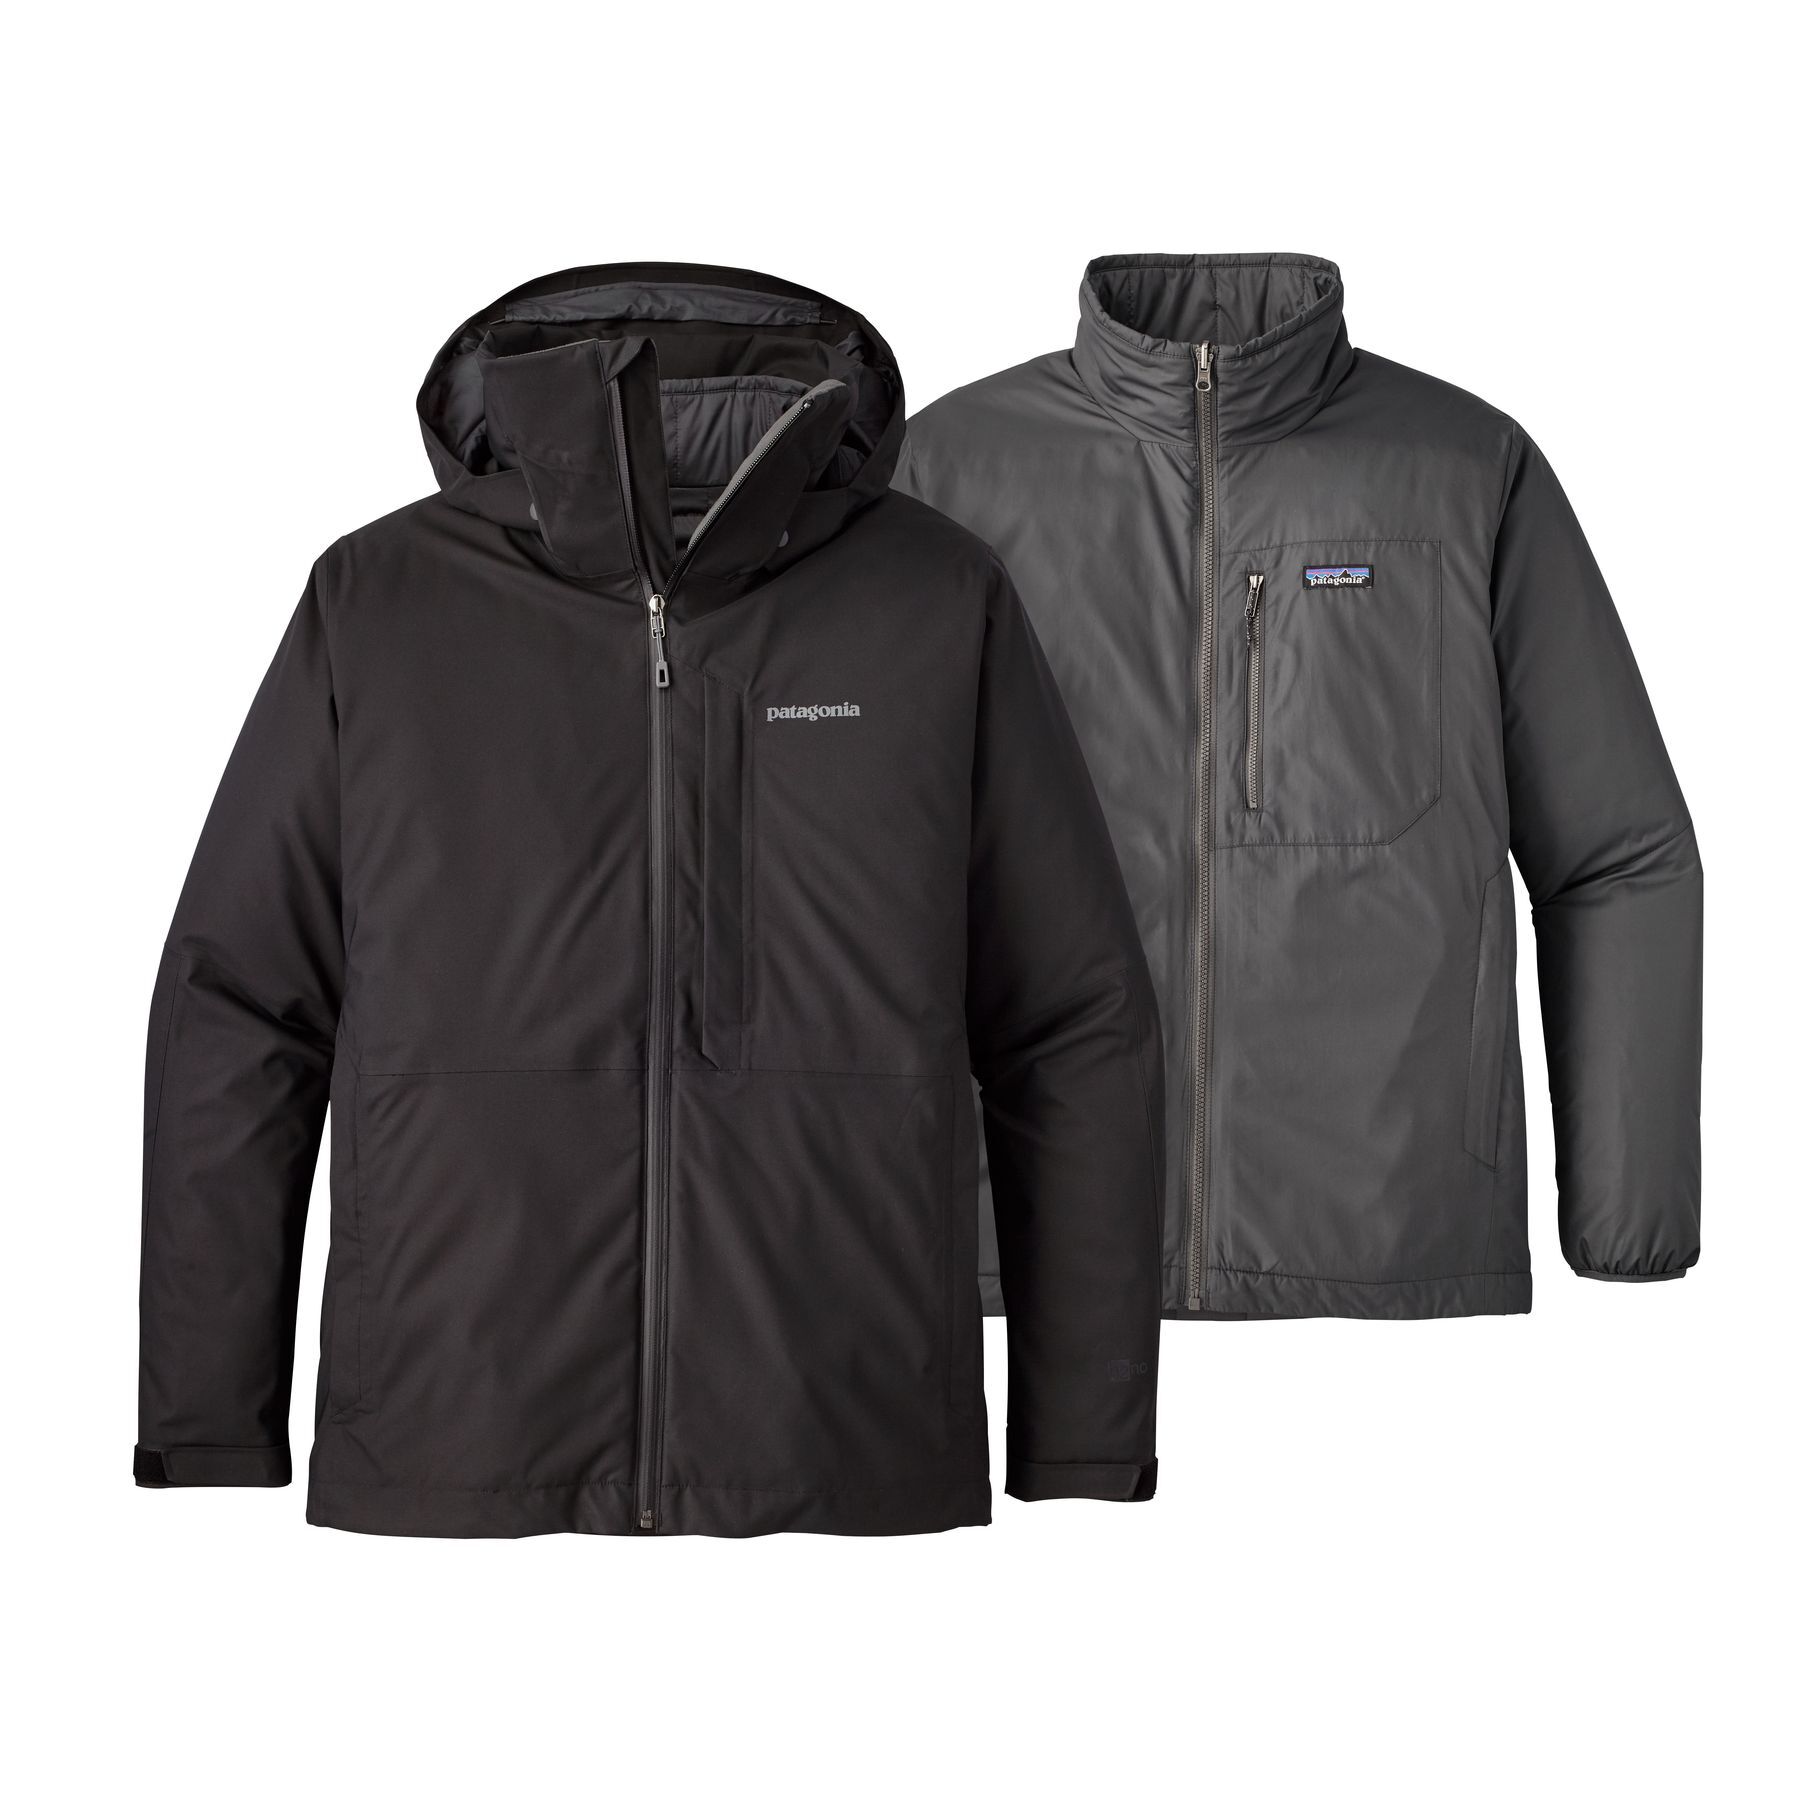 Patagonia - 3-in-1 Snowshot Jacket - Ski jacket - Men's